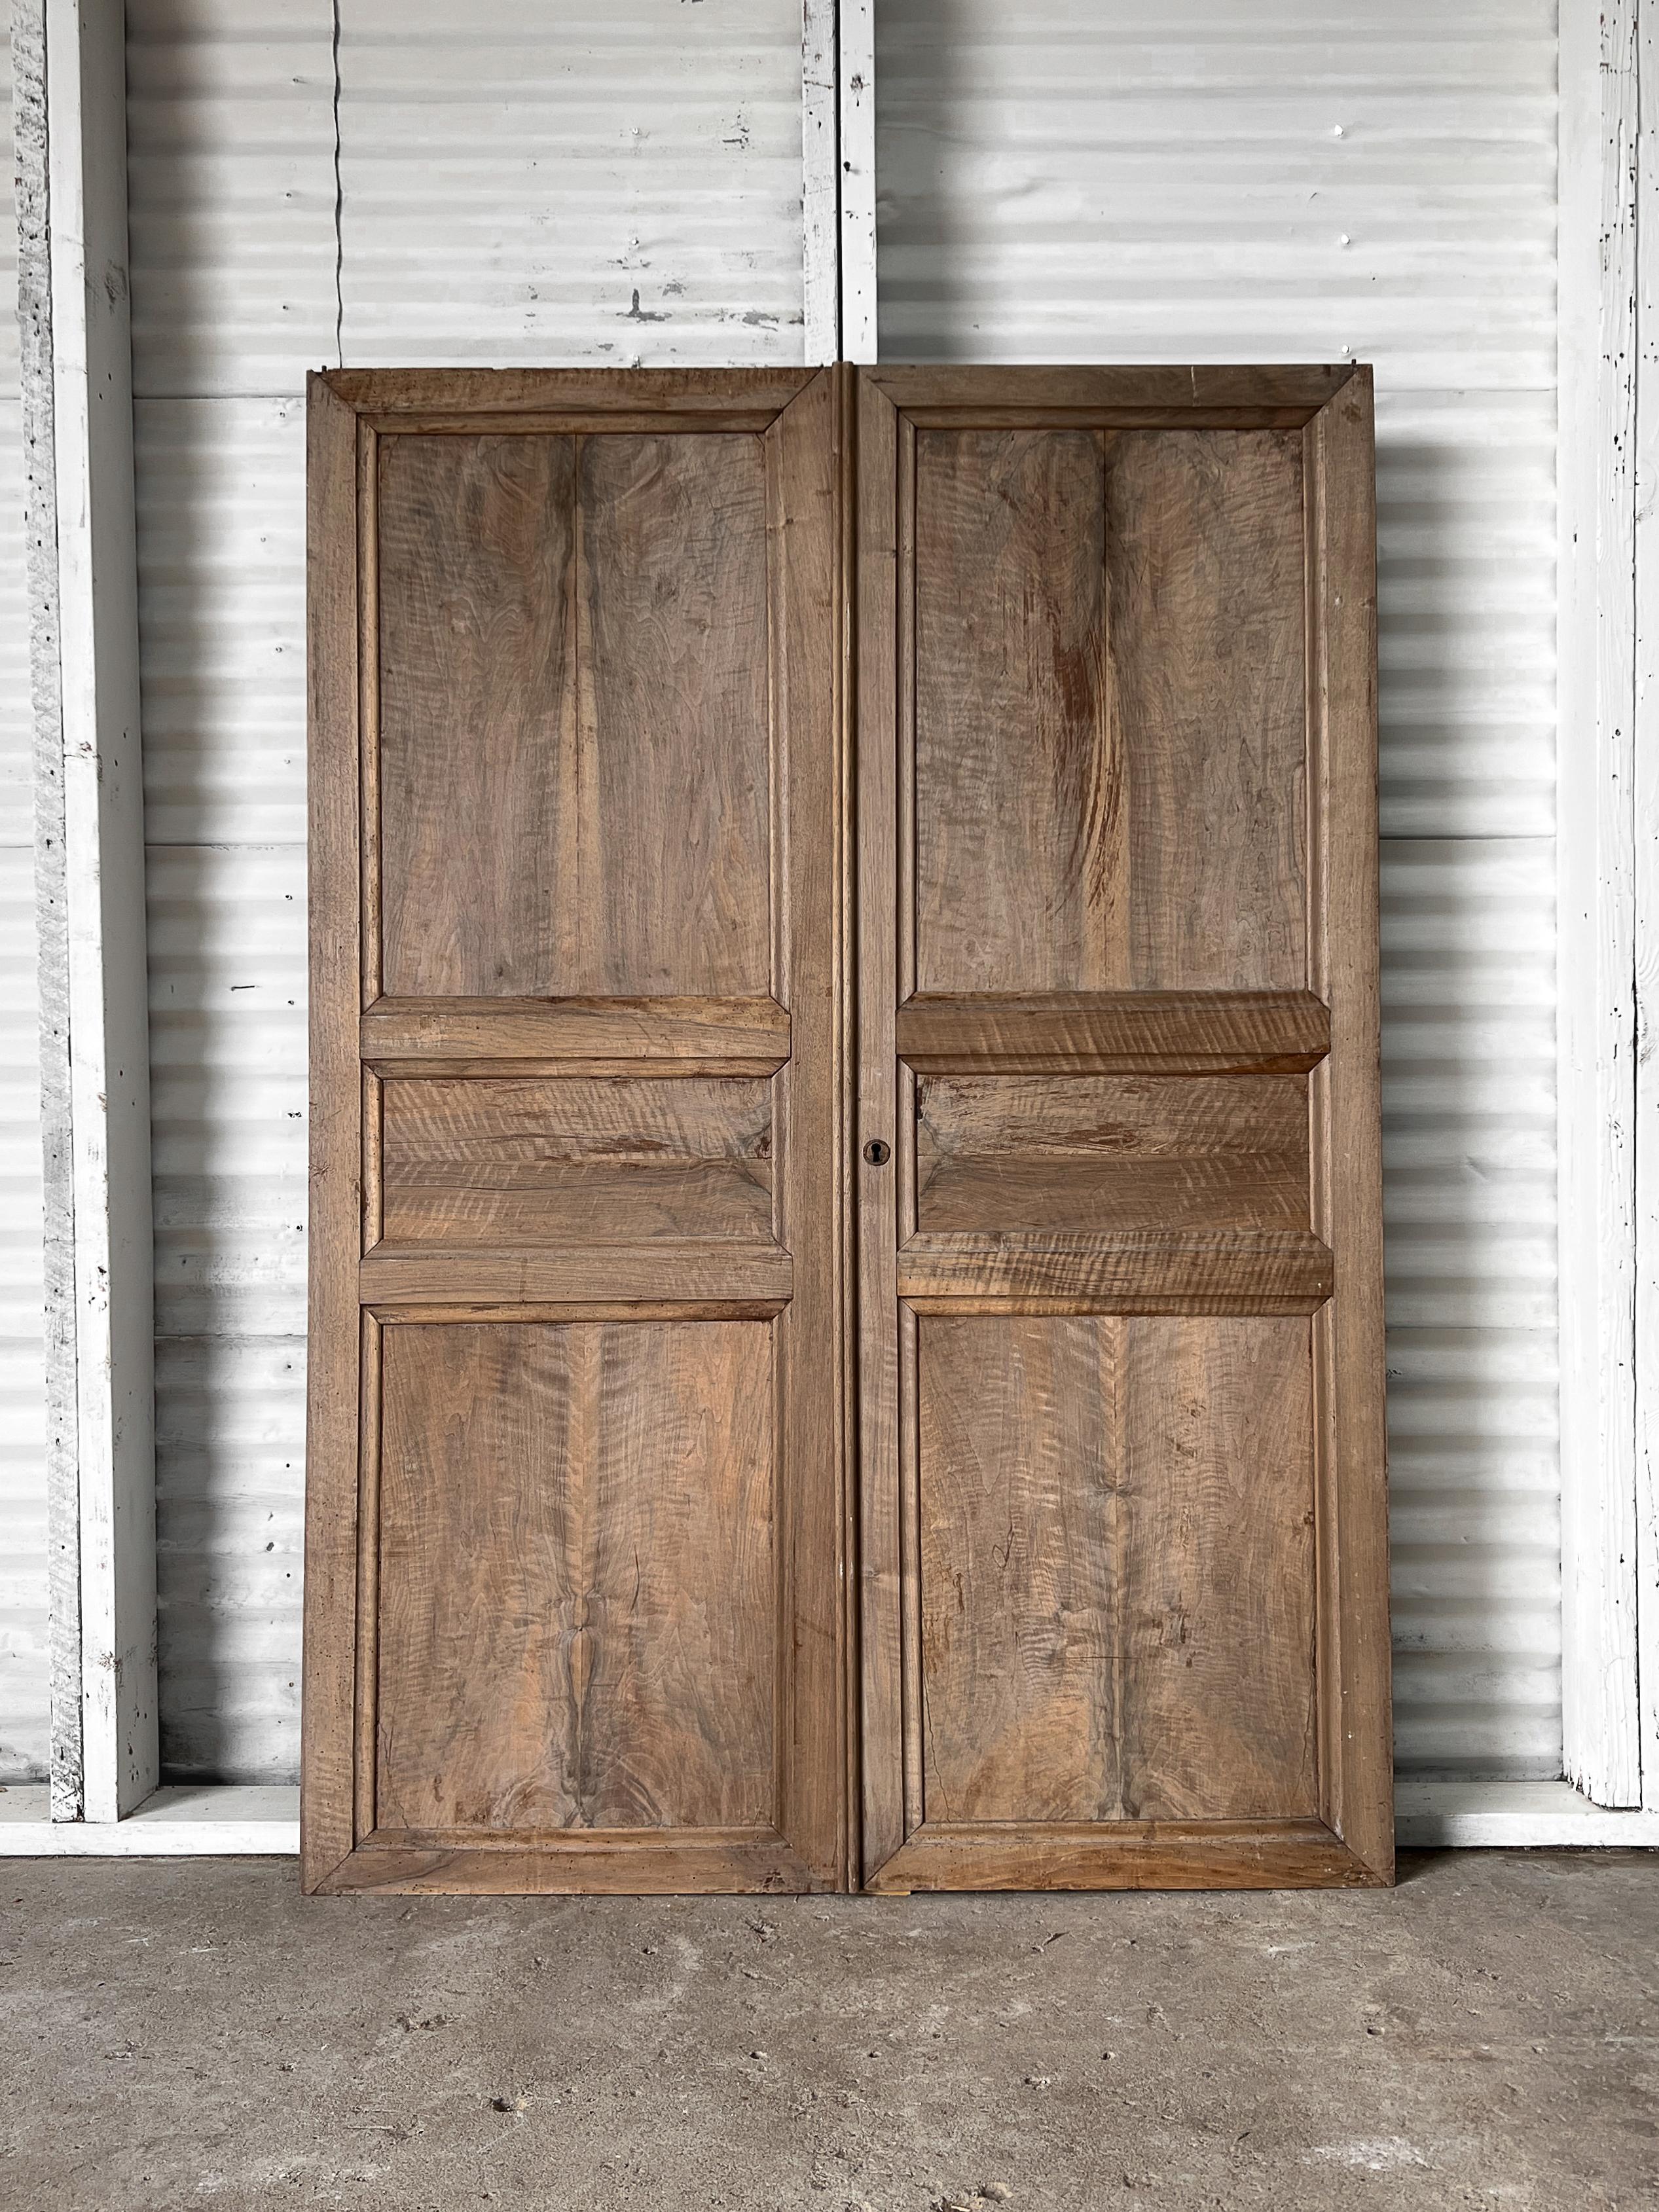 Ein Paar antiker französischer 3-Paneel-Türen aus dem 19. Jahrhundert mit hochgezogenen, abgeschrägten Zierelementen. Die aus massivem Nussbaumholz handgefertigten Paneele sind aufeinander abgestimmt, was ihnen ein elegantes Aussehen verleiht.

Die